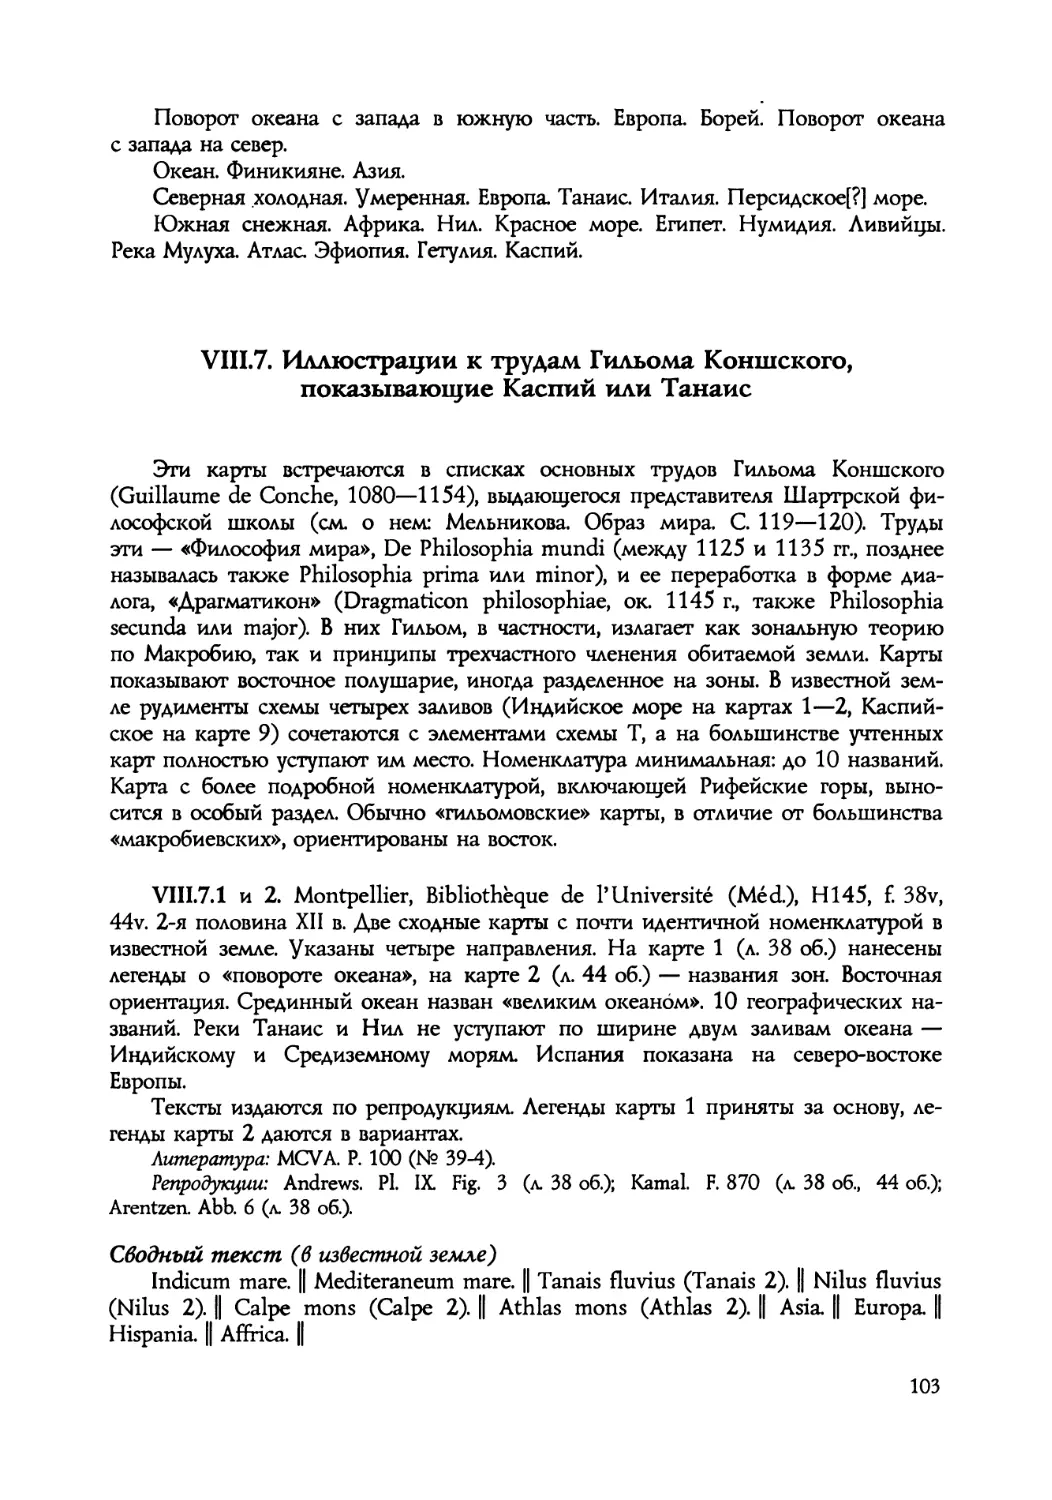 VIII.7. Иллюстрации к трудам Гильома Коншского, показывающие Каспий или Танаис